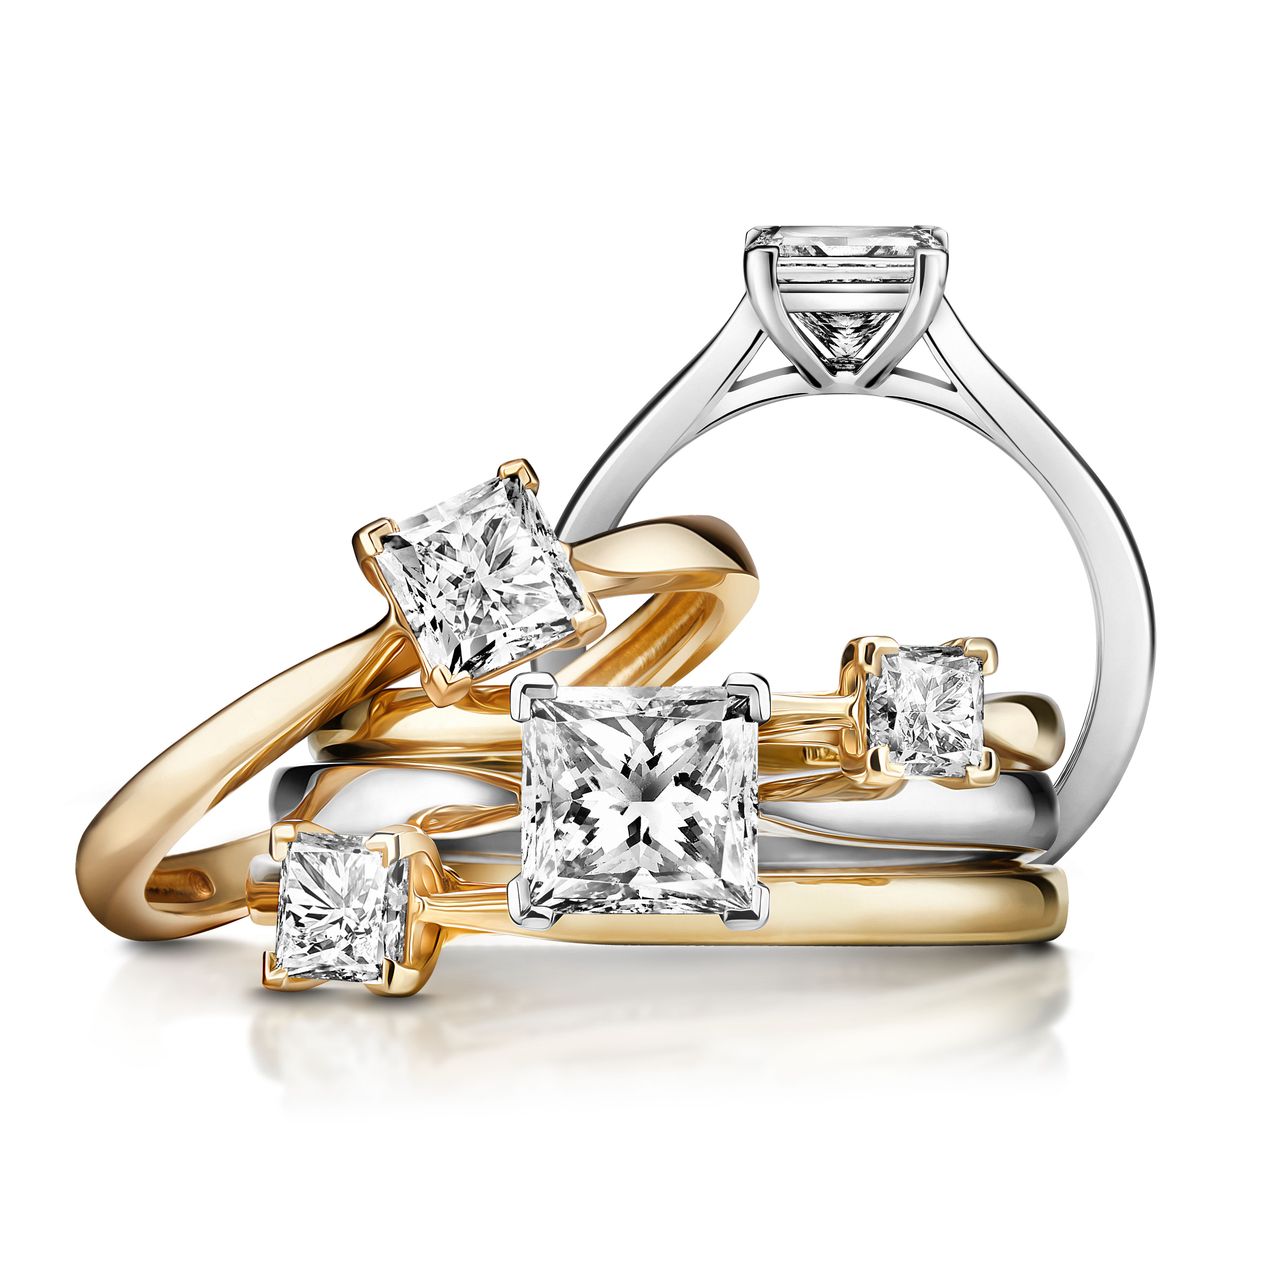 Piękne pierścionki zaręczynowe znajdziesz w W.KRUK 